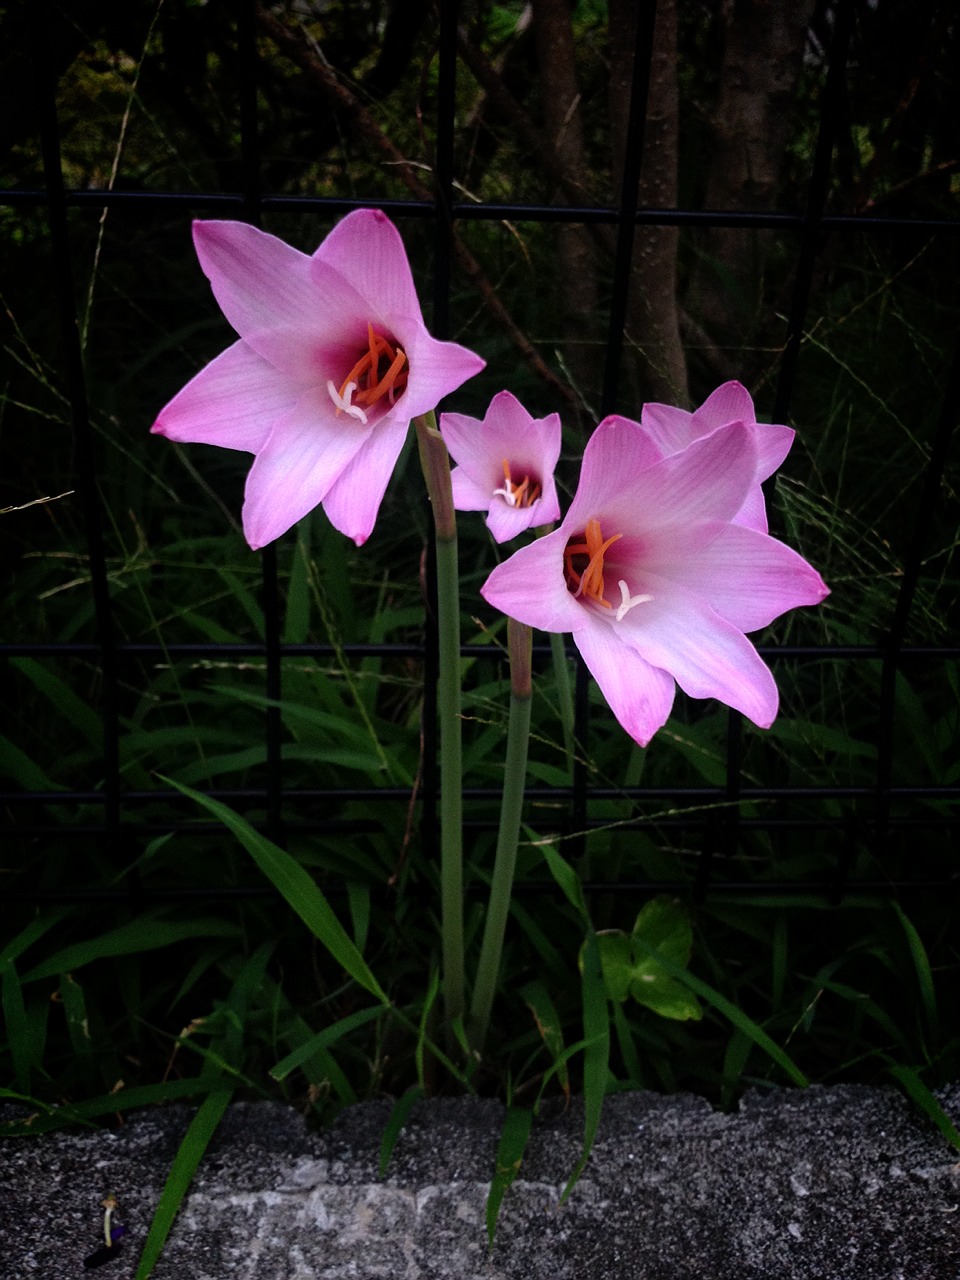 ヒガンバナ科 花びら６枚 ピンク ネットde植物図鑑 雑魚でなんかやろうよブログ